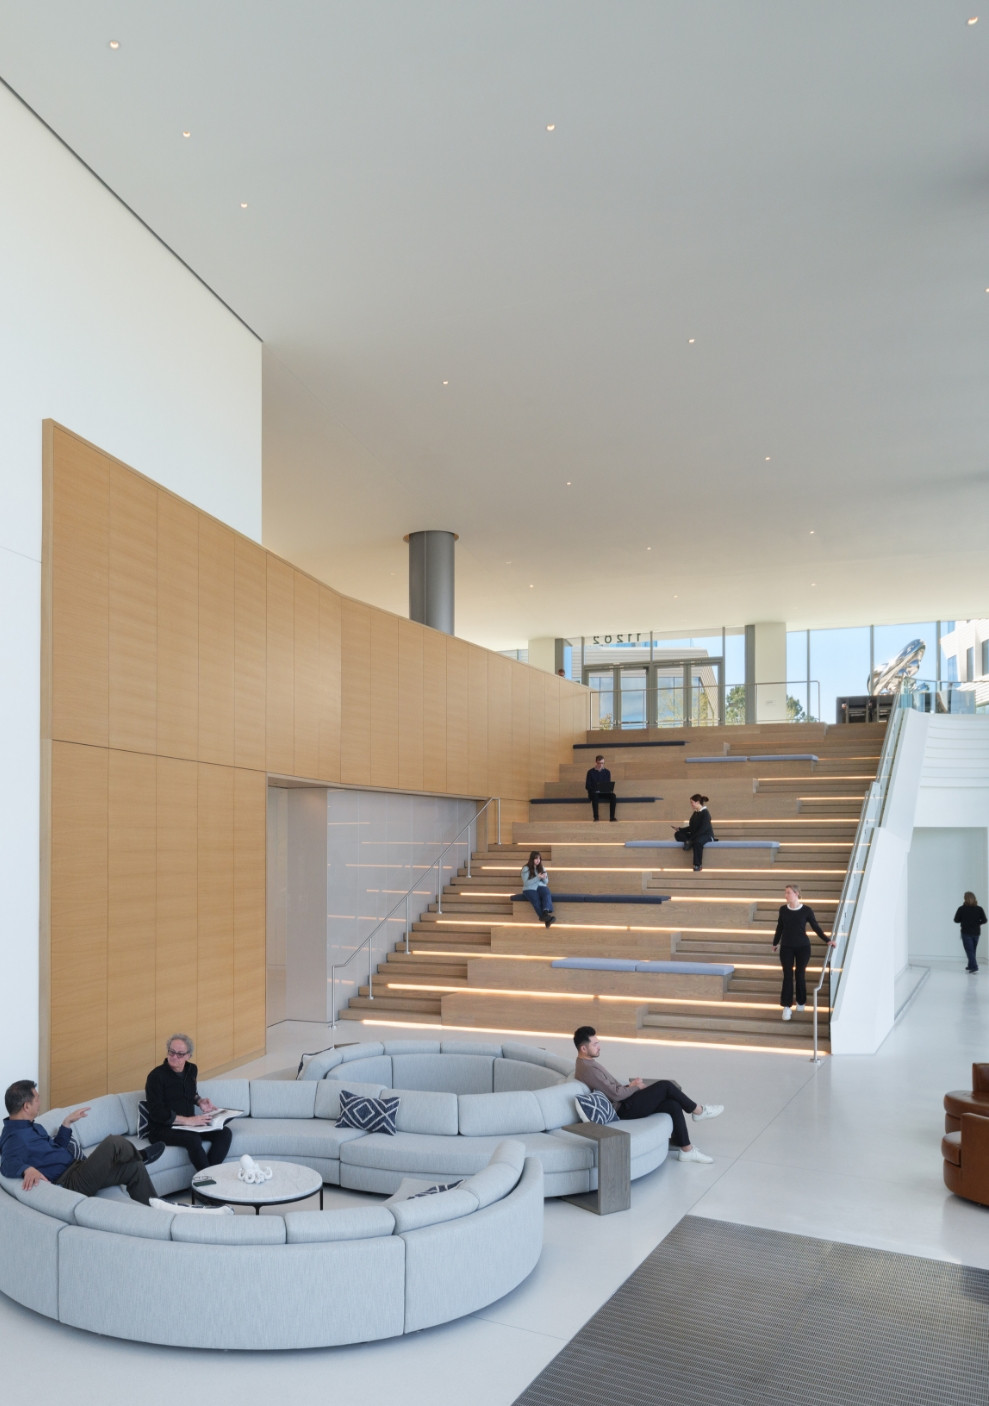 Breakthrough Properties - Torrey View: People in lobby and stairway area